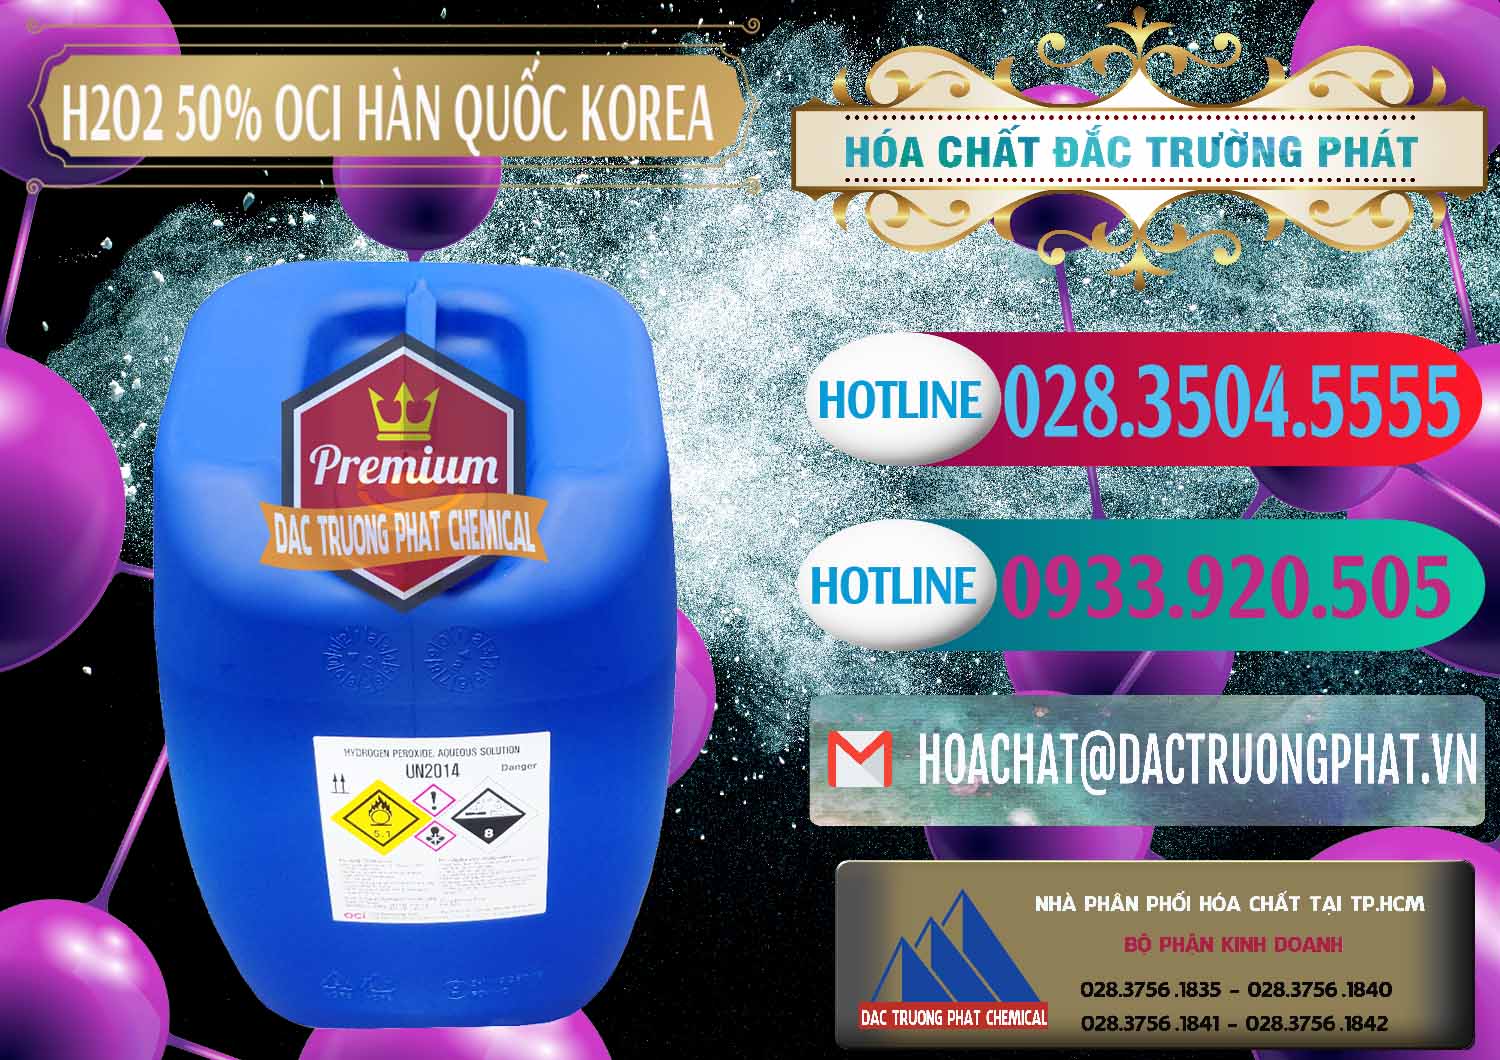 Công ty chuyên bán _ phân phối H2O2 - Hydrogen Peroxide 50% OCI Hàn Quốc Korea - 0075 - Nơi nhập khẩu ( cung cấp ) hóa chất tại TP.HCM - truongphat.vn